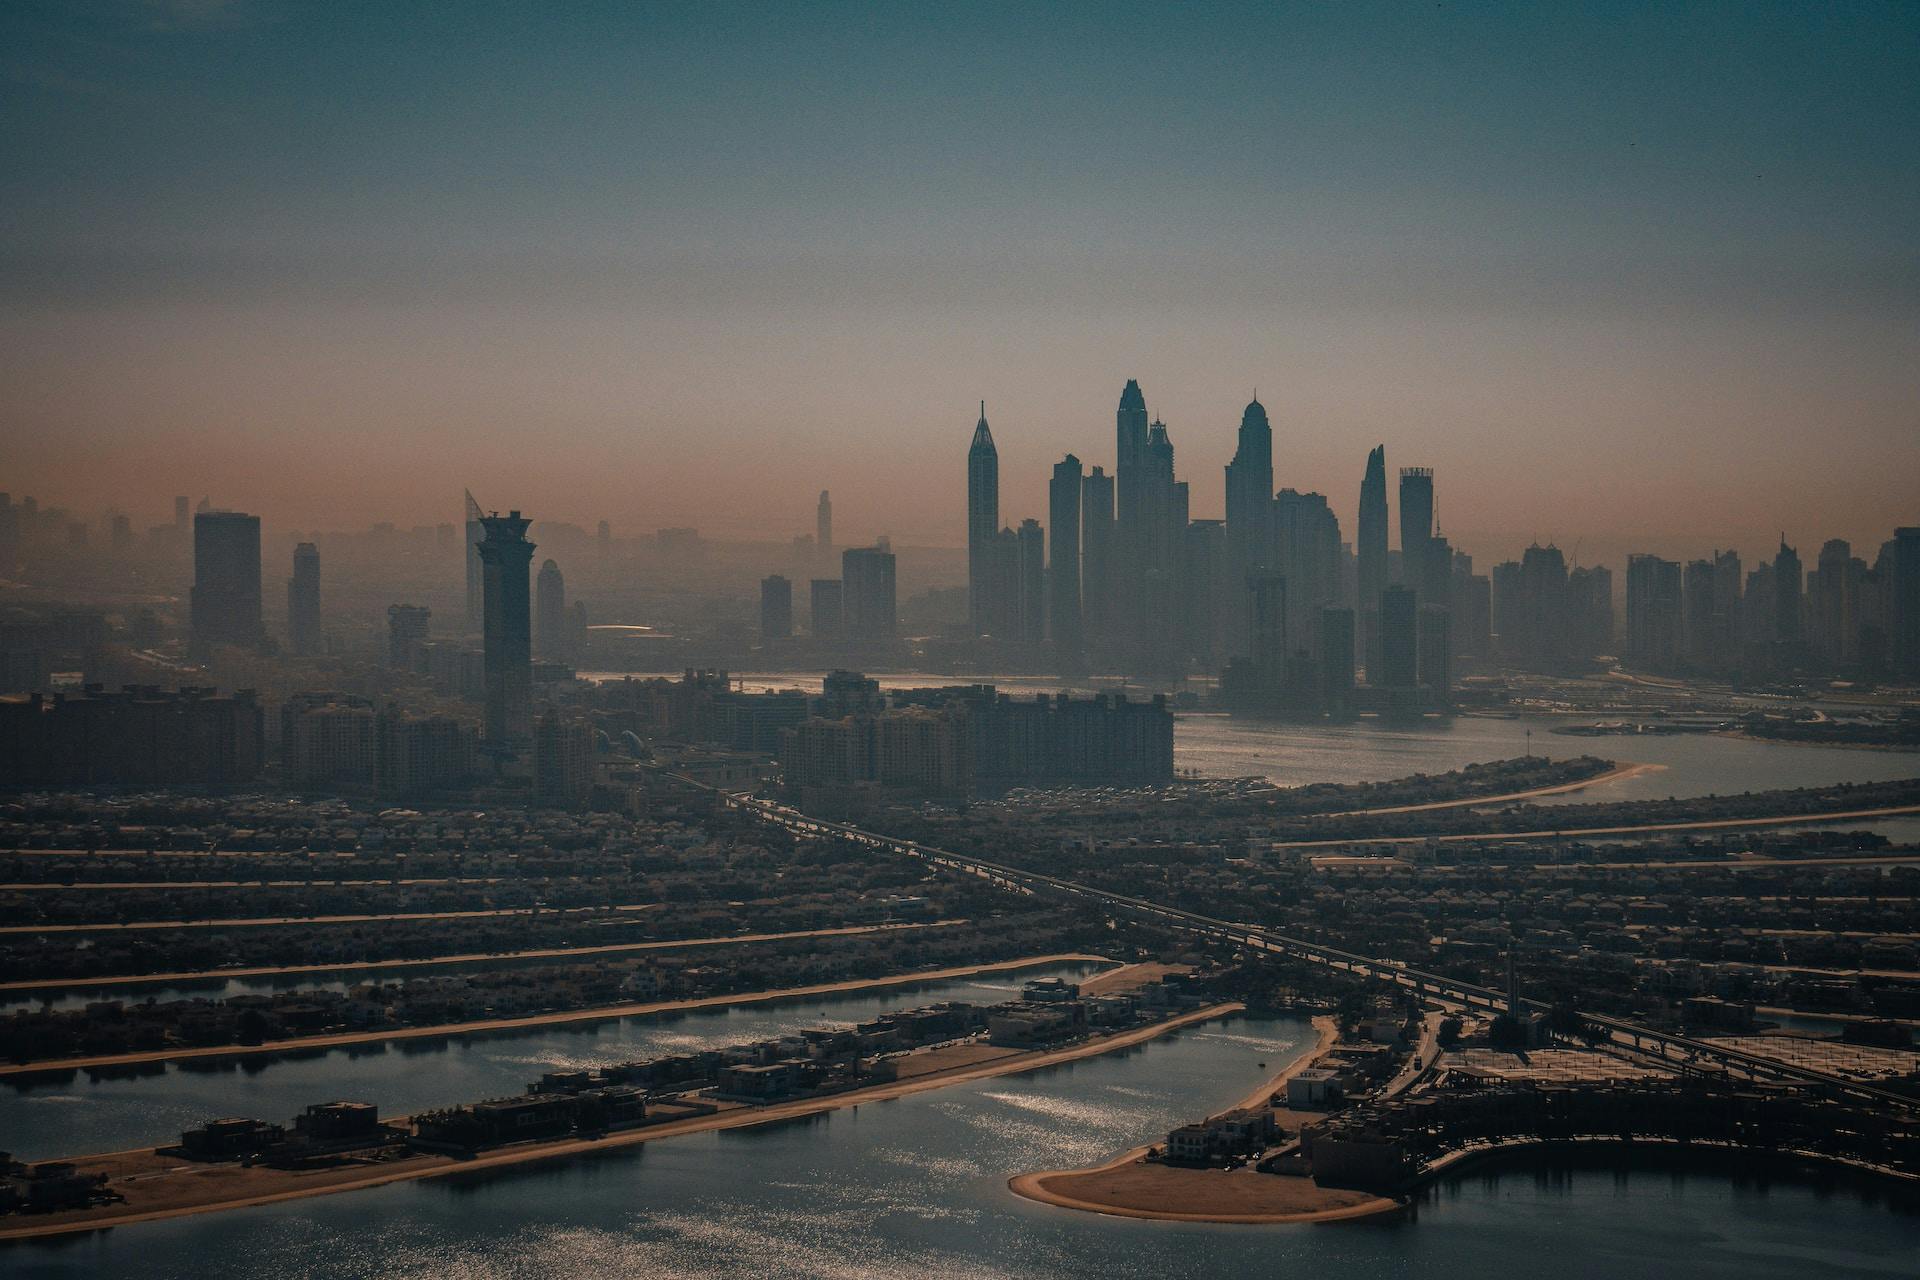 The smoggy Dubai skyline